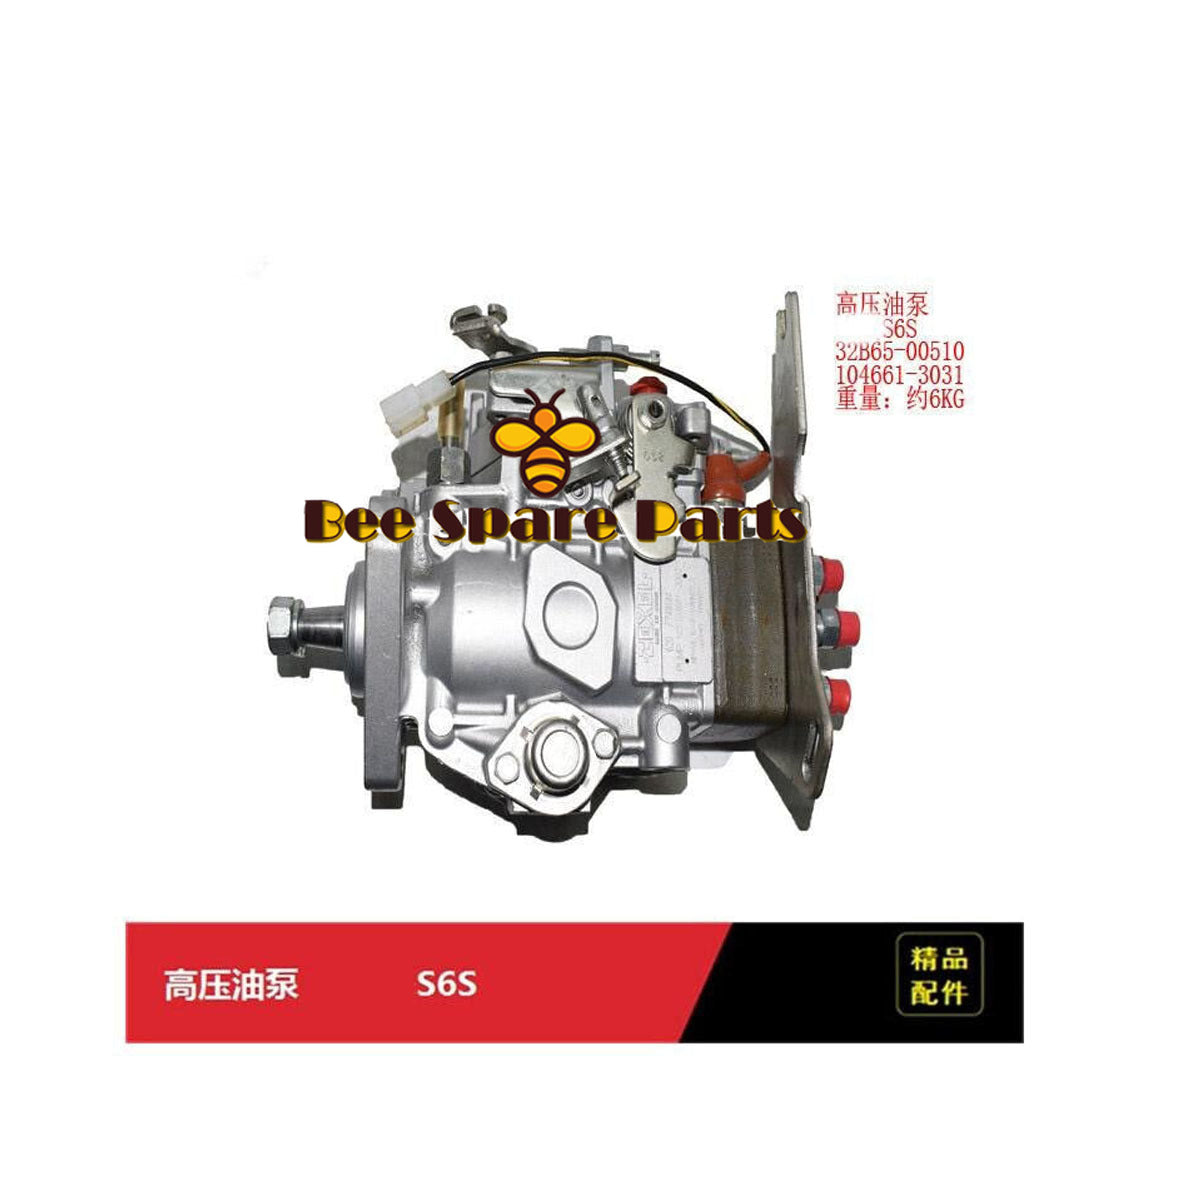 32B65-00510 Injector Pump For Engine Mitsubishi S6S